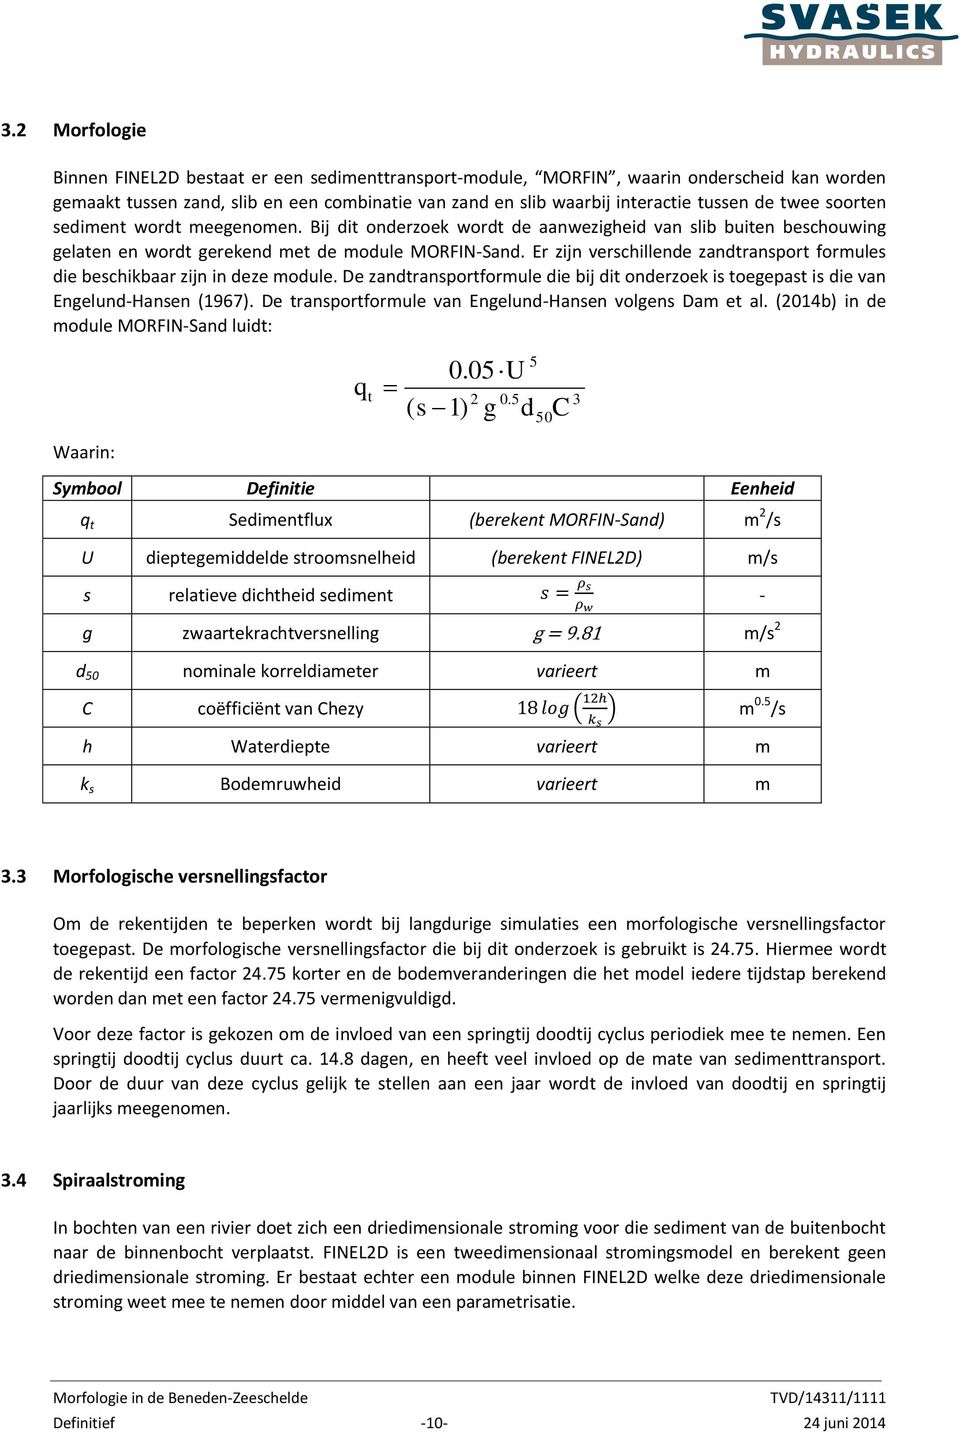 Er zijn verschillende zandtransport formules die beschikbaar zijn in deze module. De zandtransportformule die bij dit onderzoek is toegepast is die van Engelund-Hansen (1967).